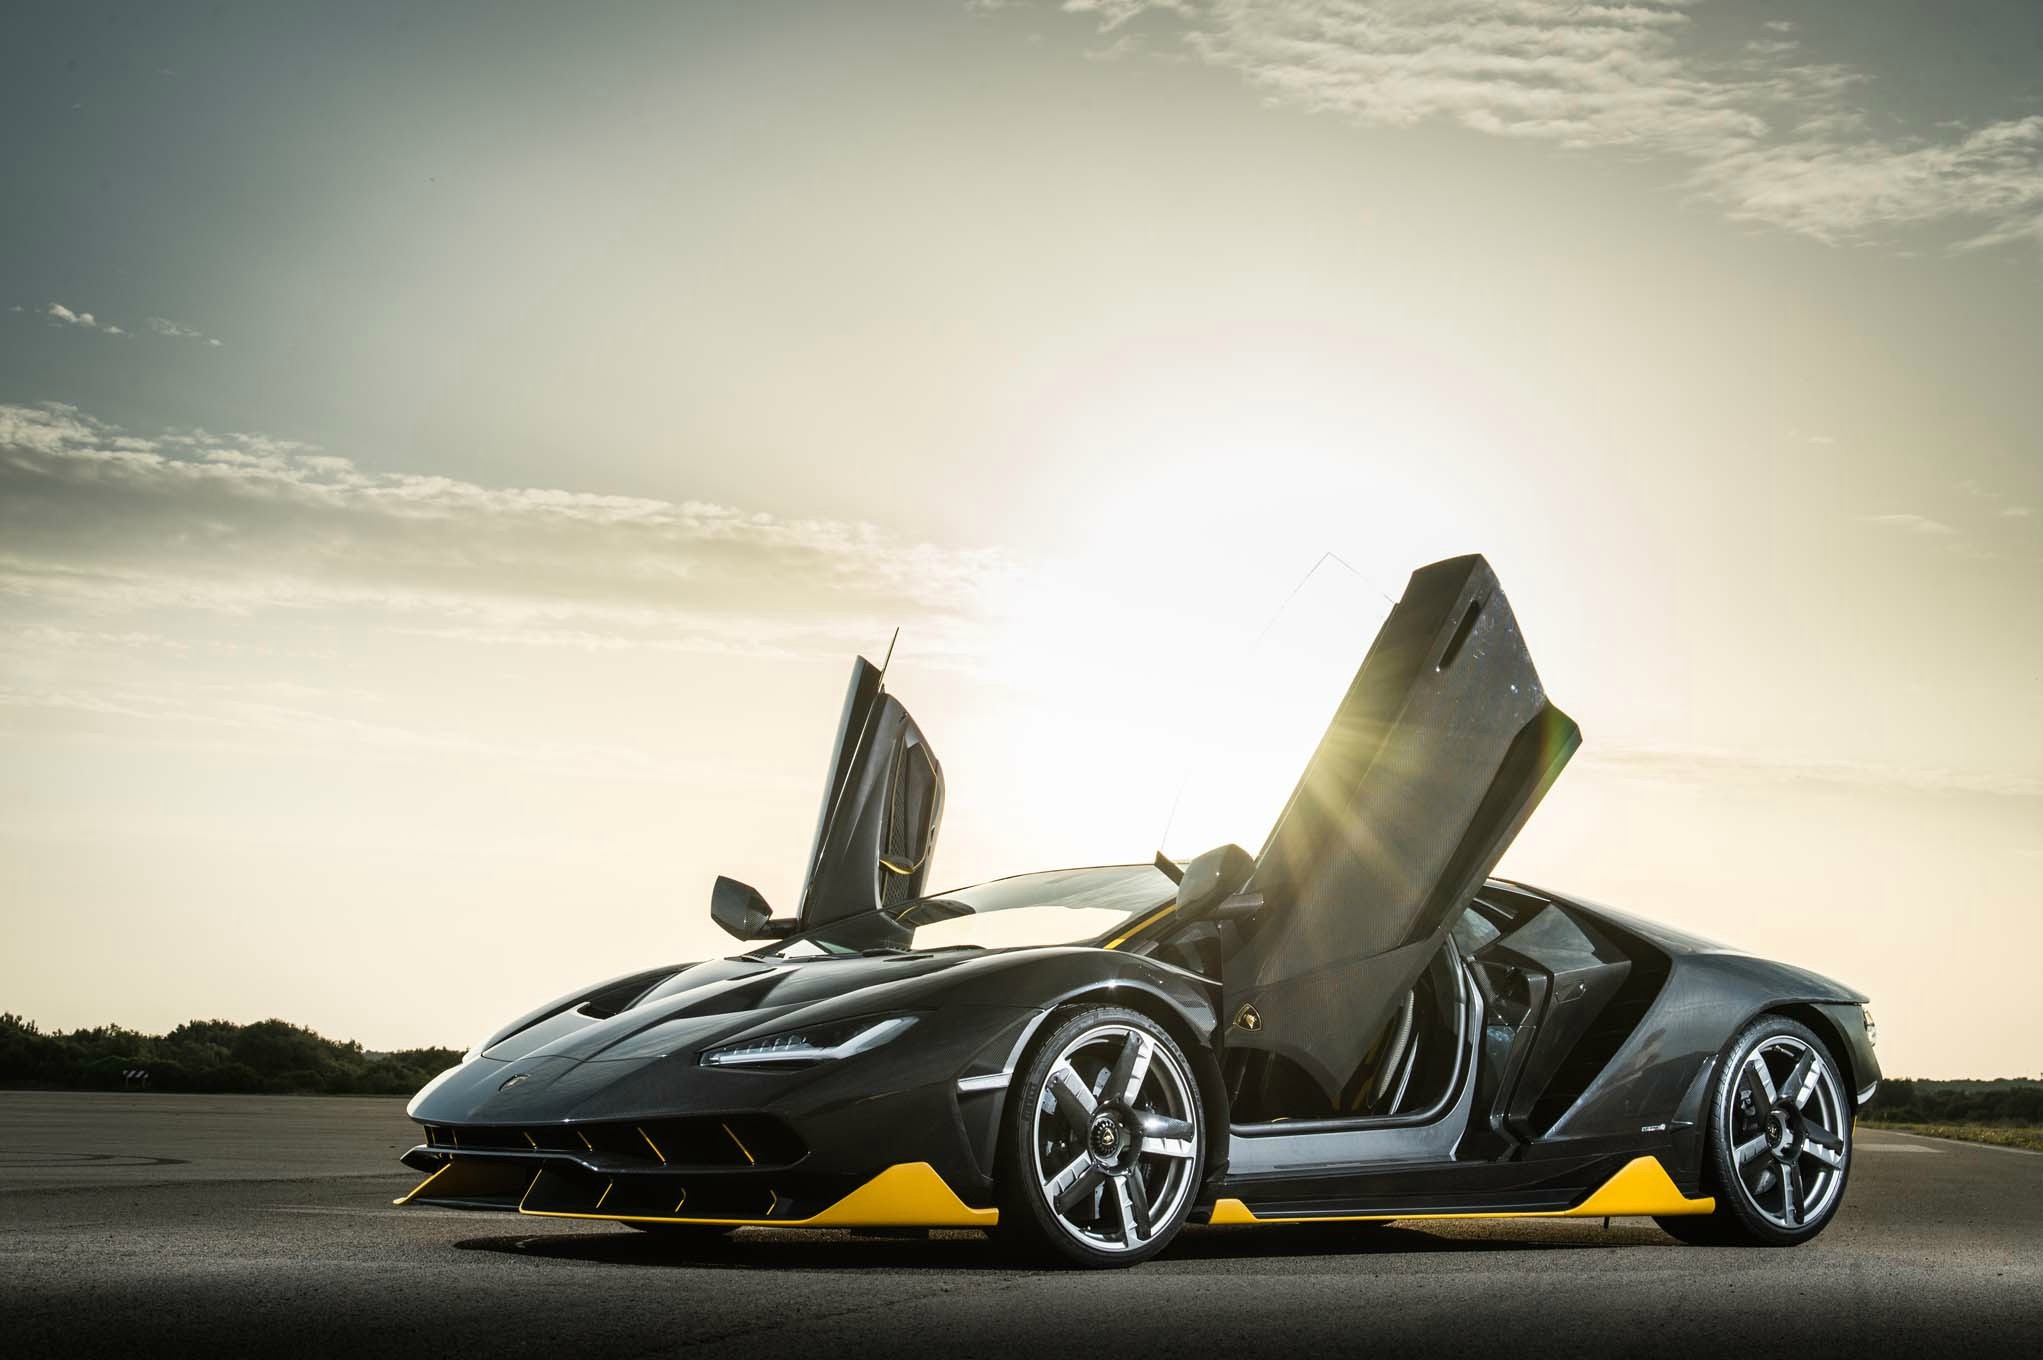 兰博基尼史上最为极致的敞篷超级跑车--Aventador J_汽车图库_中华汽车网校